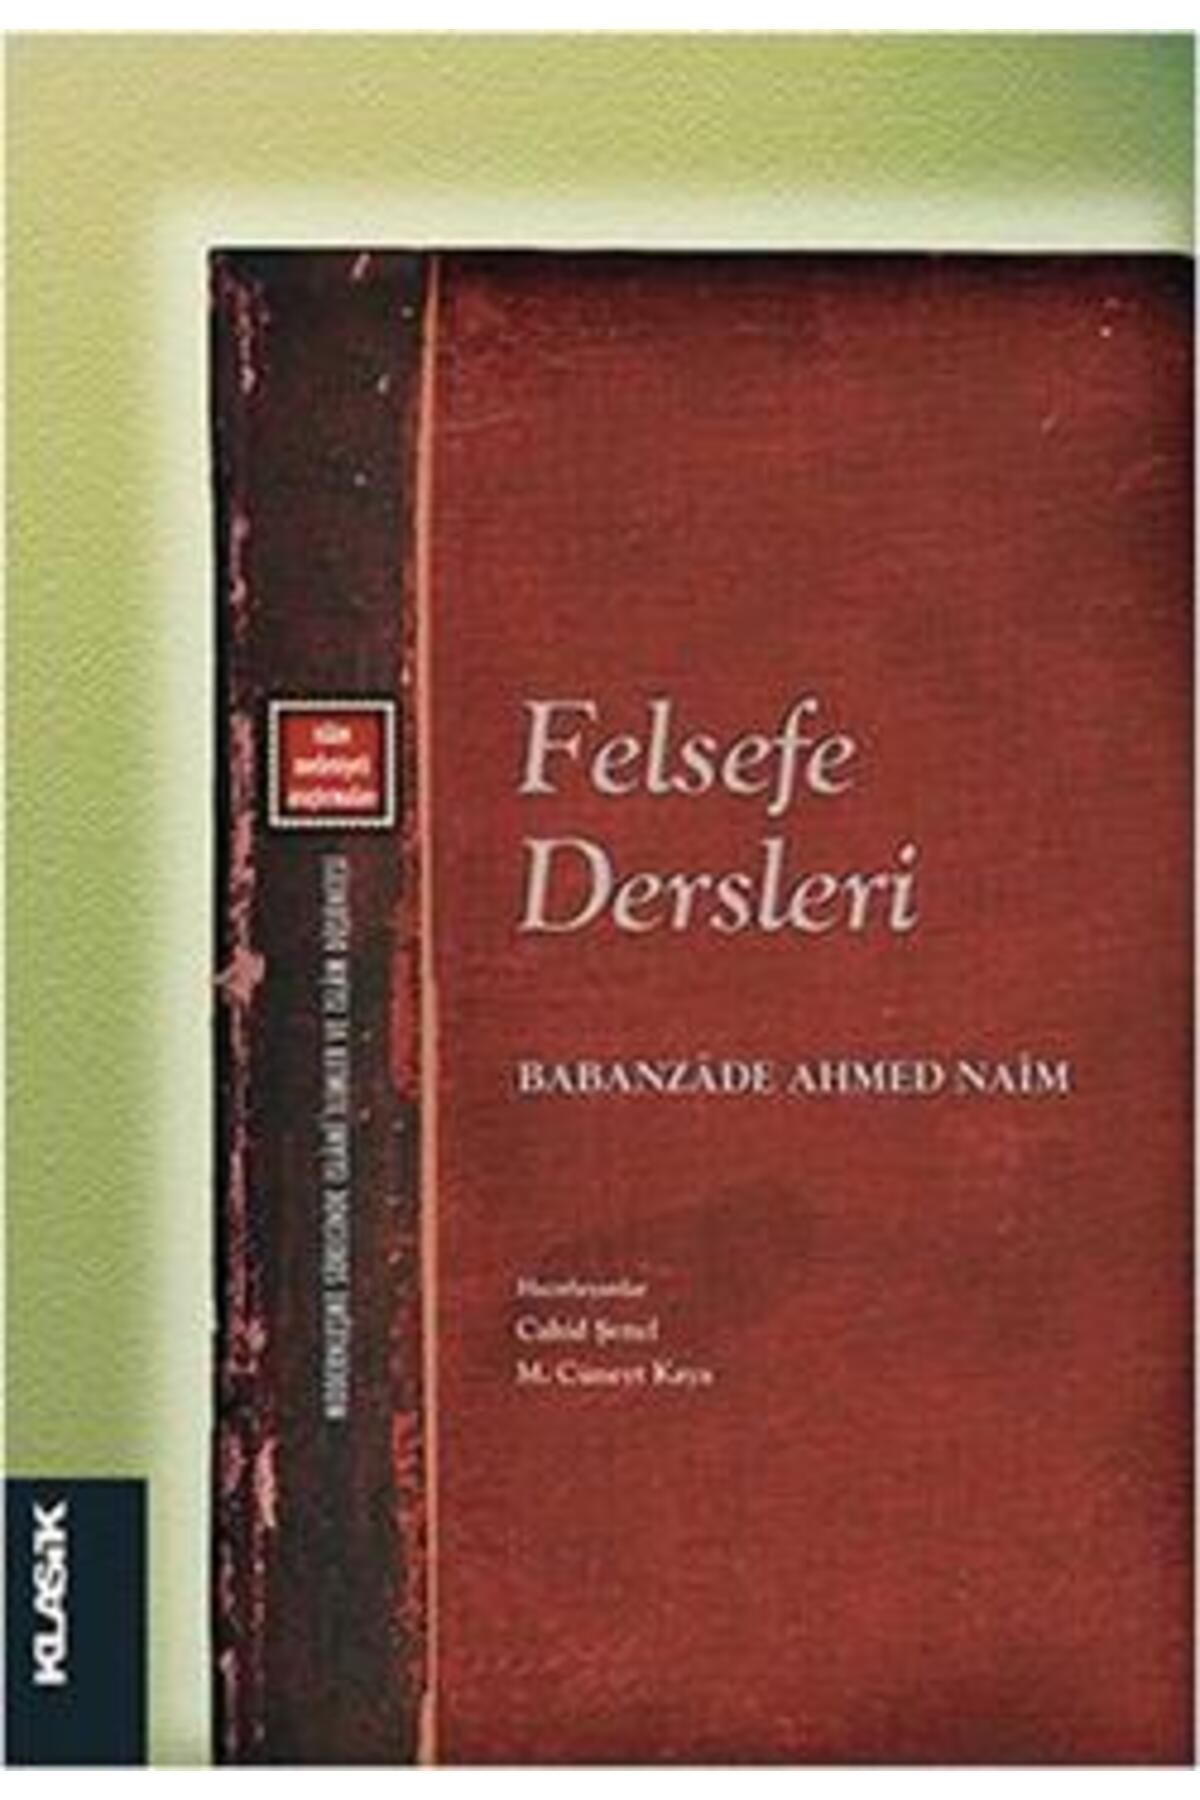 Klasik Yayınları Felsefe Dersleri kitabı - Babanzade Ahmed Naim - Klasik Yayınları